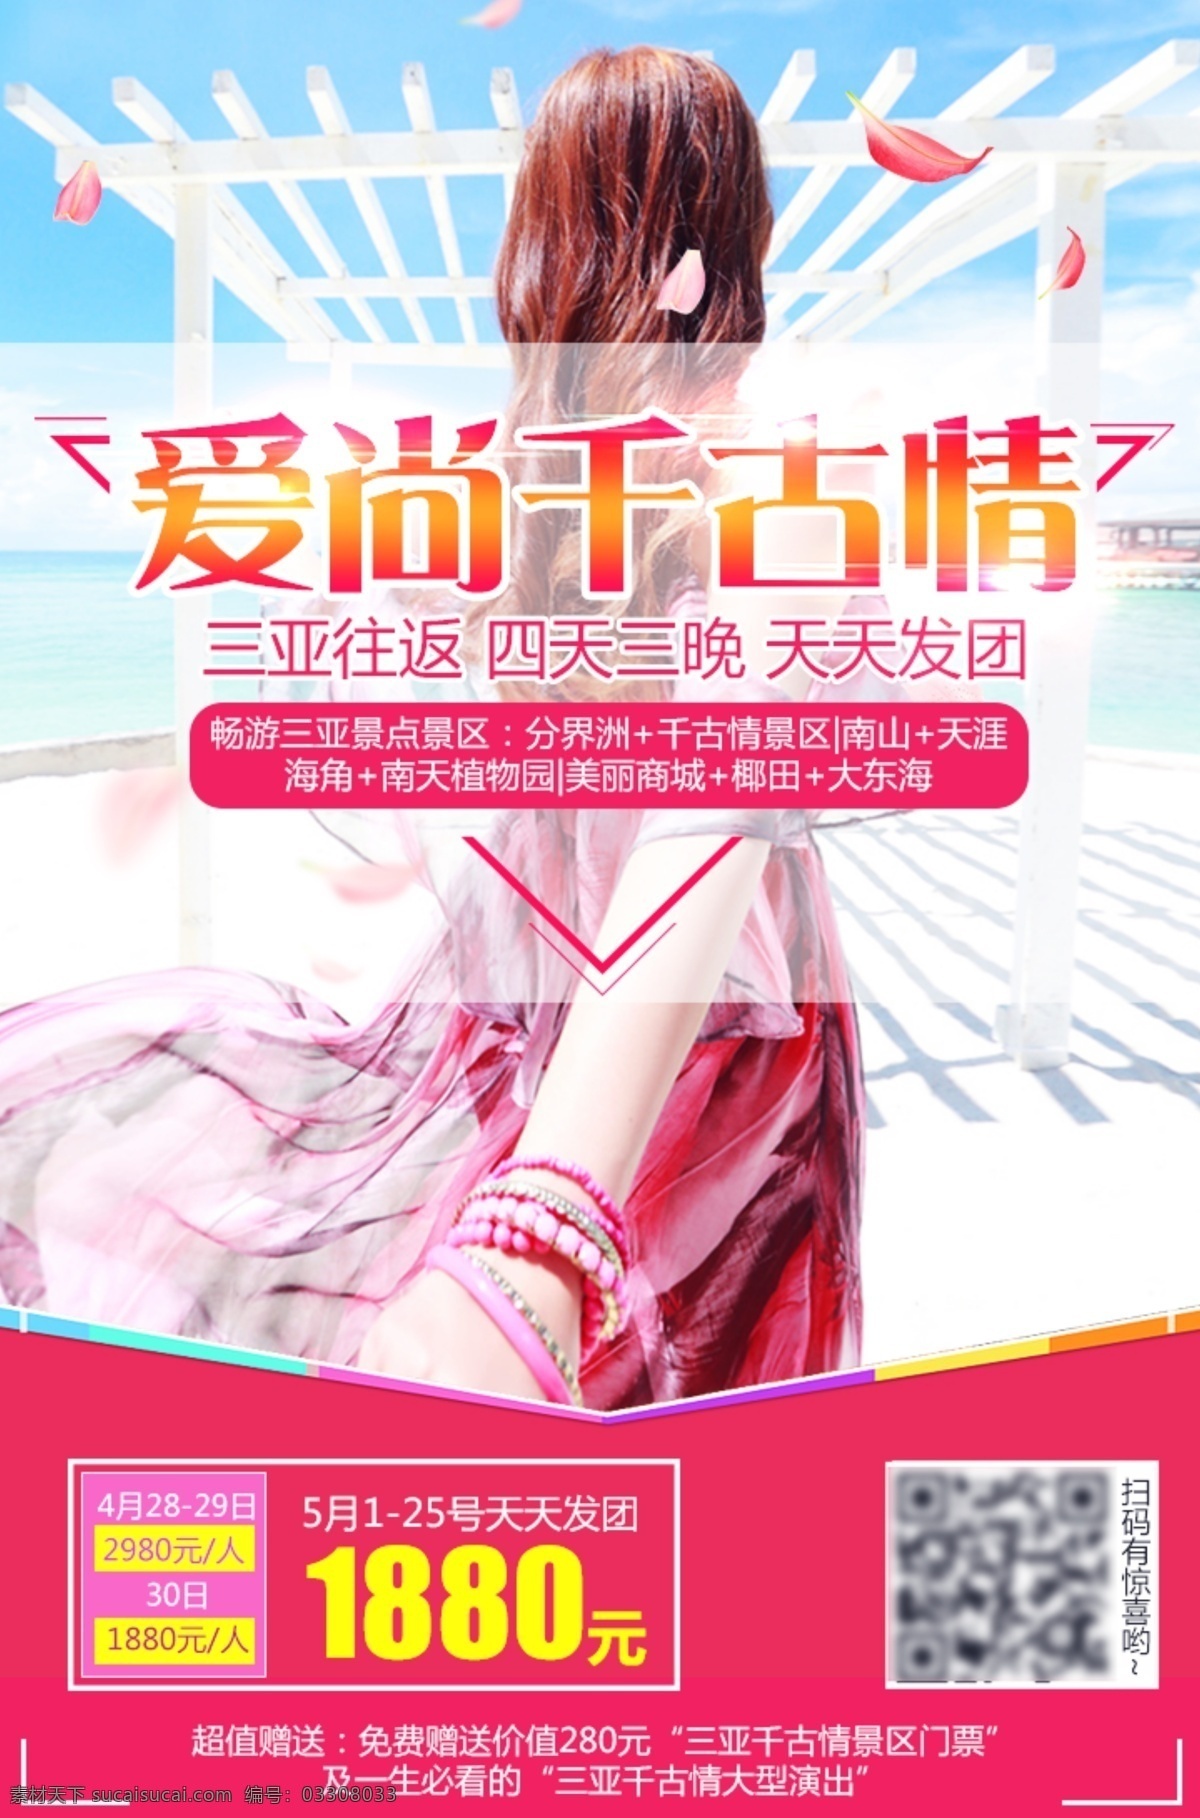 旅游 海报 三亚旅游 海南旅游 微 信 朋友 圈 广告 三亚 美女 海边 度假 浪漫